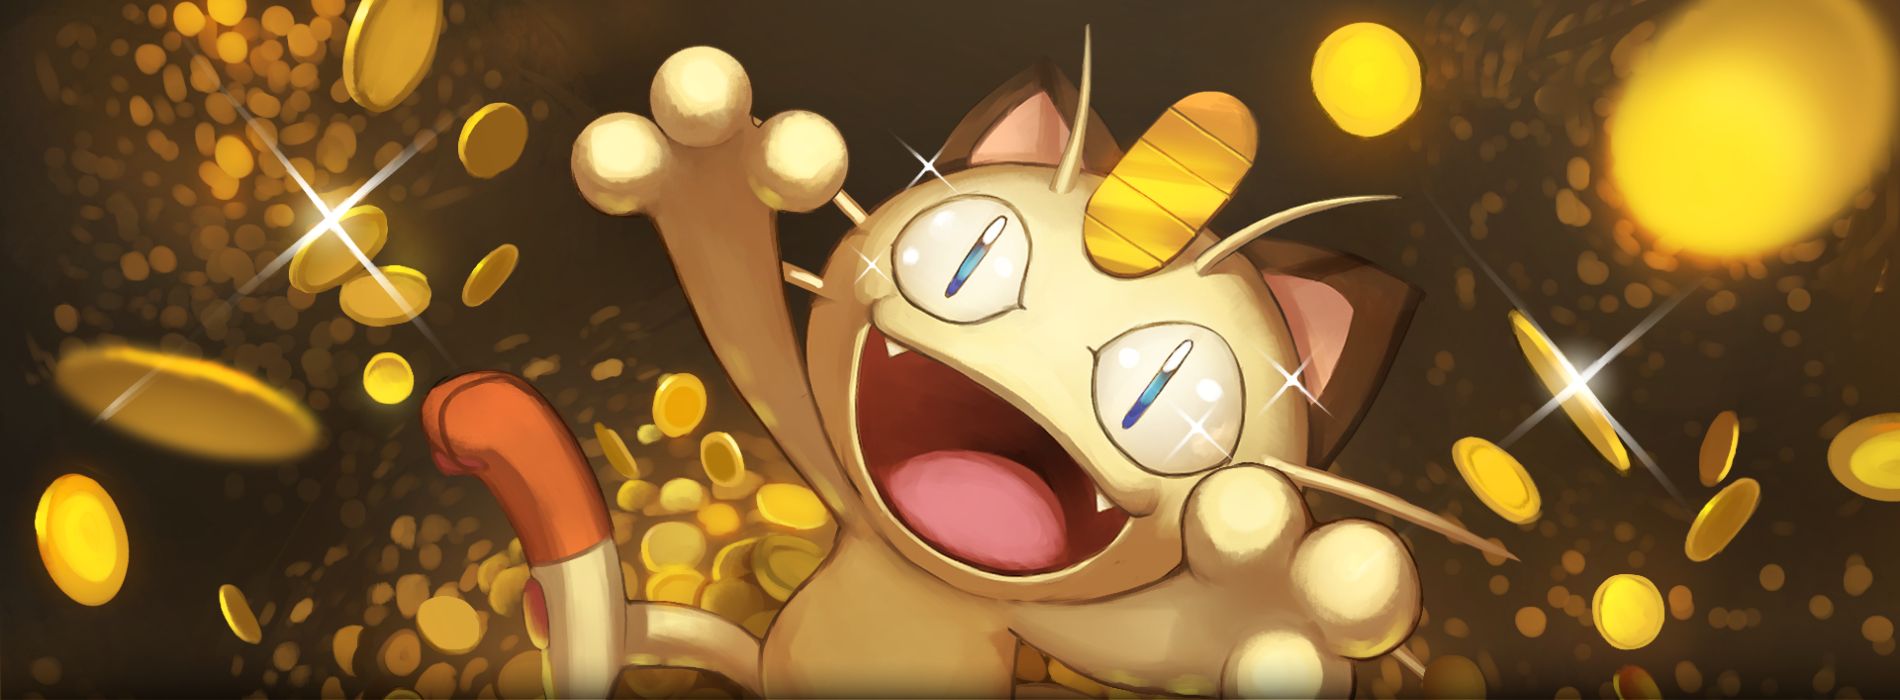 famoso -gatti-cartoni-meowth (Pokémon